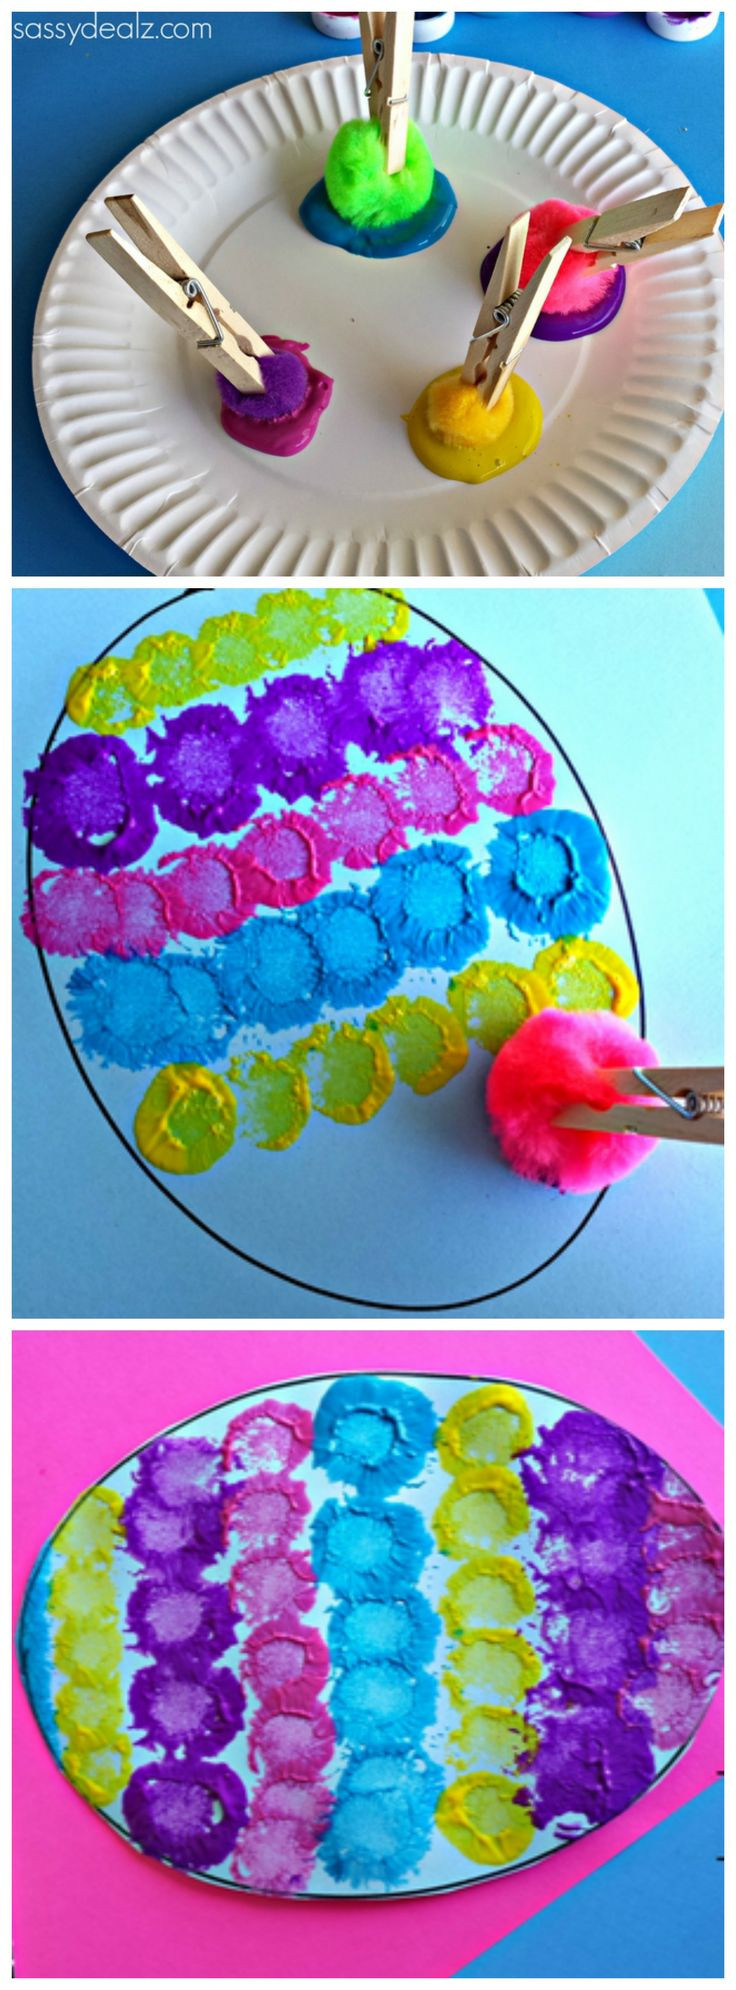 Craft Activities For Preschoolers
 15 Best Art Activities For Preschoolers Bored Art